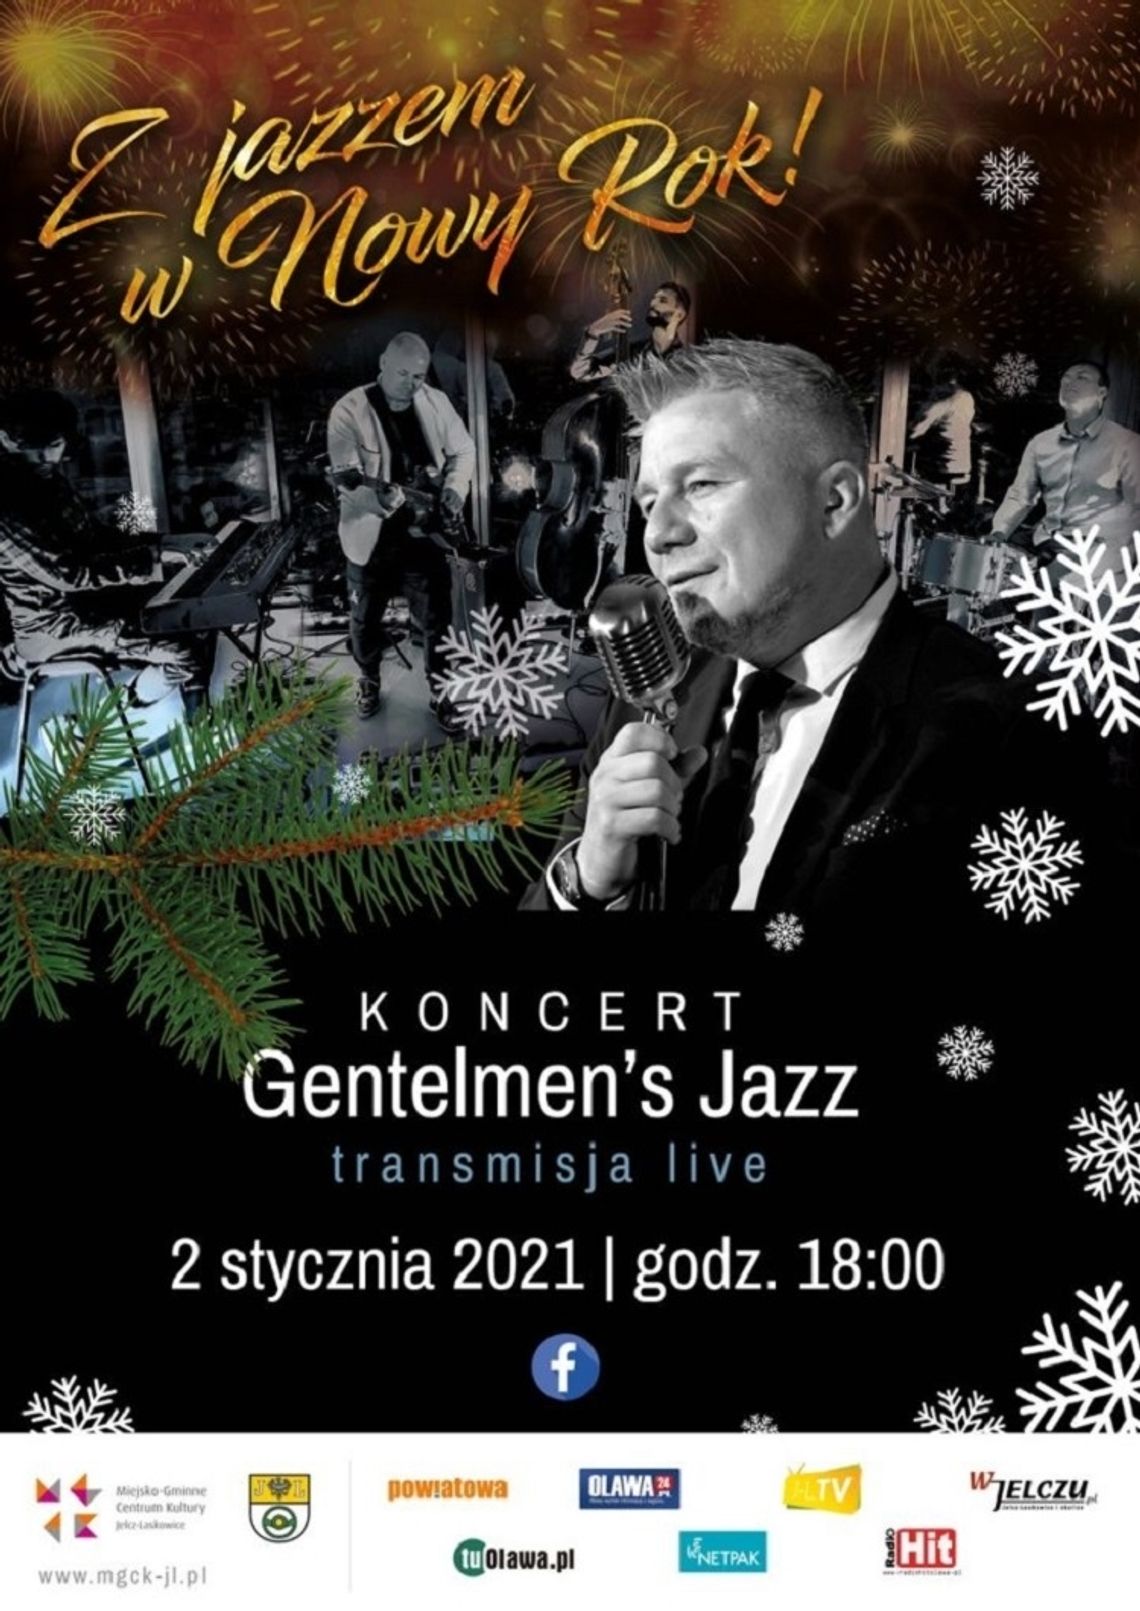 Z jazzem w Nowy Rok! 